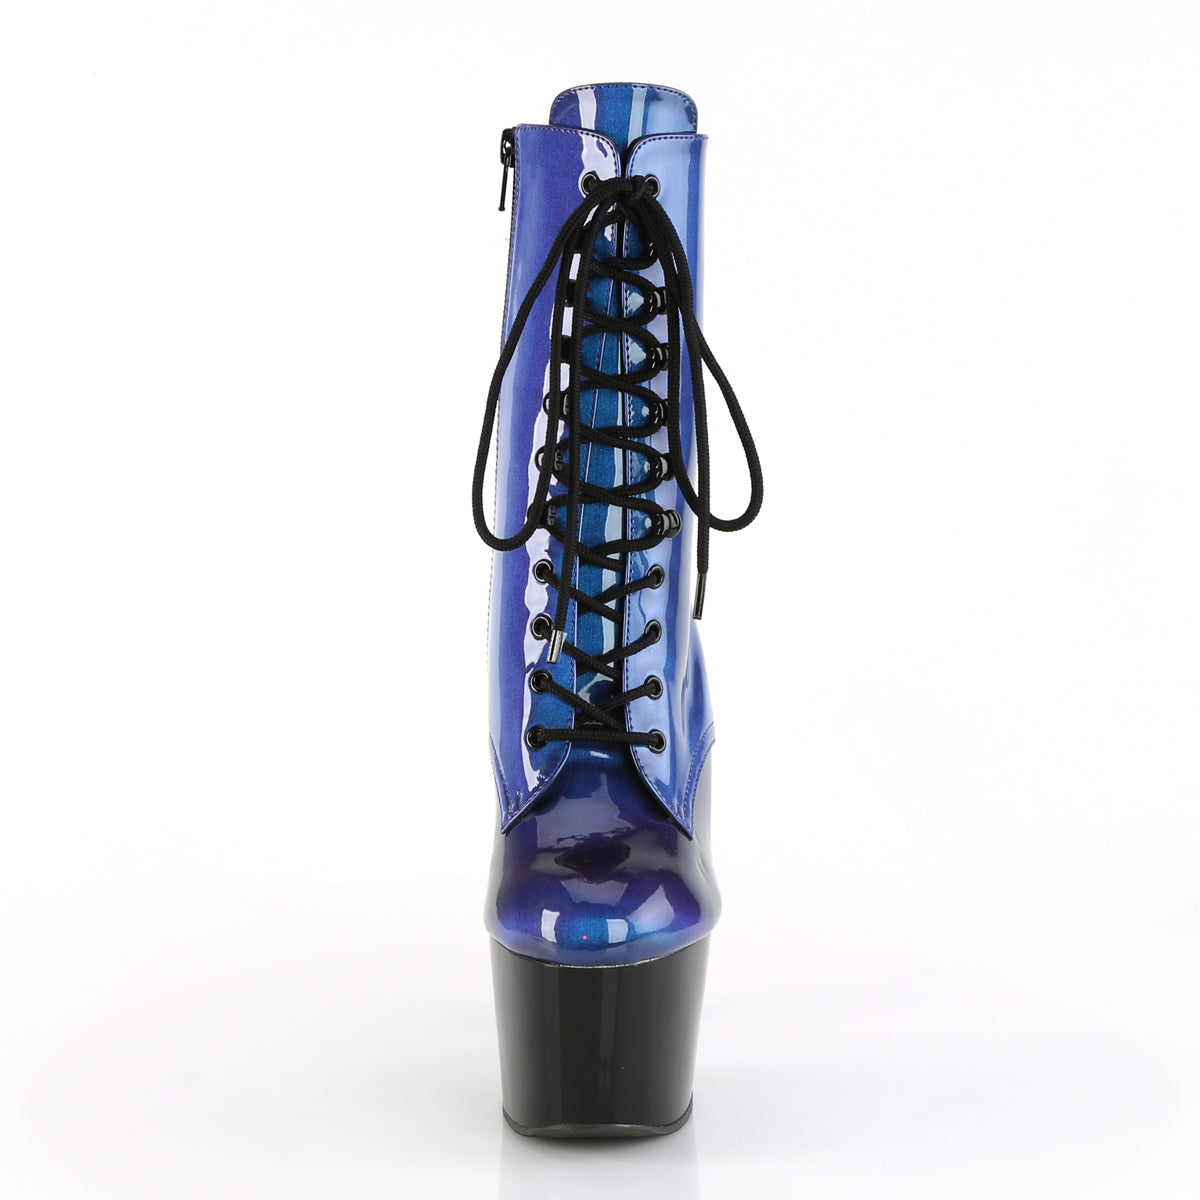 Pleaser Womens Ankle Boots ADORE-1020SHG Blue-Purple/Blk